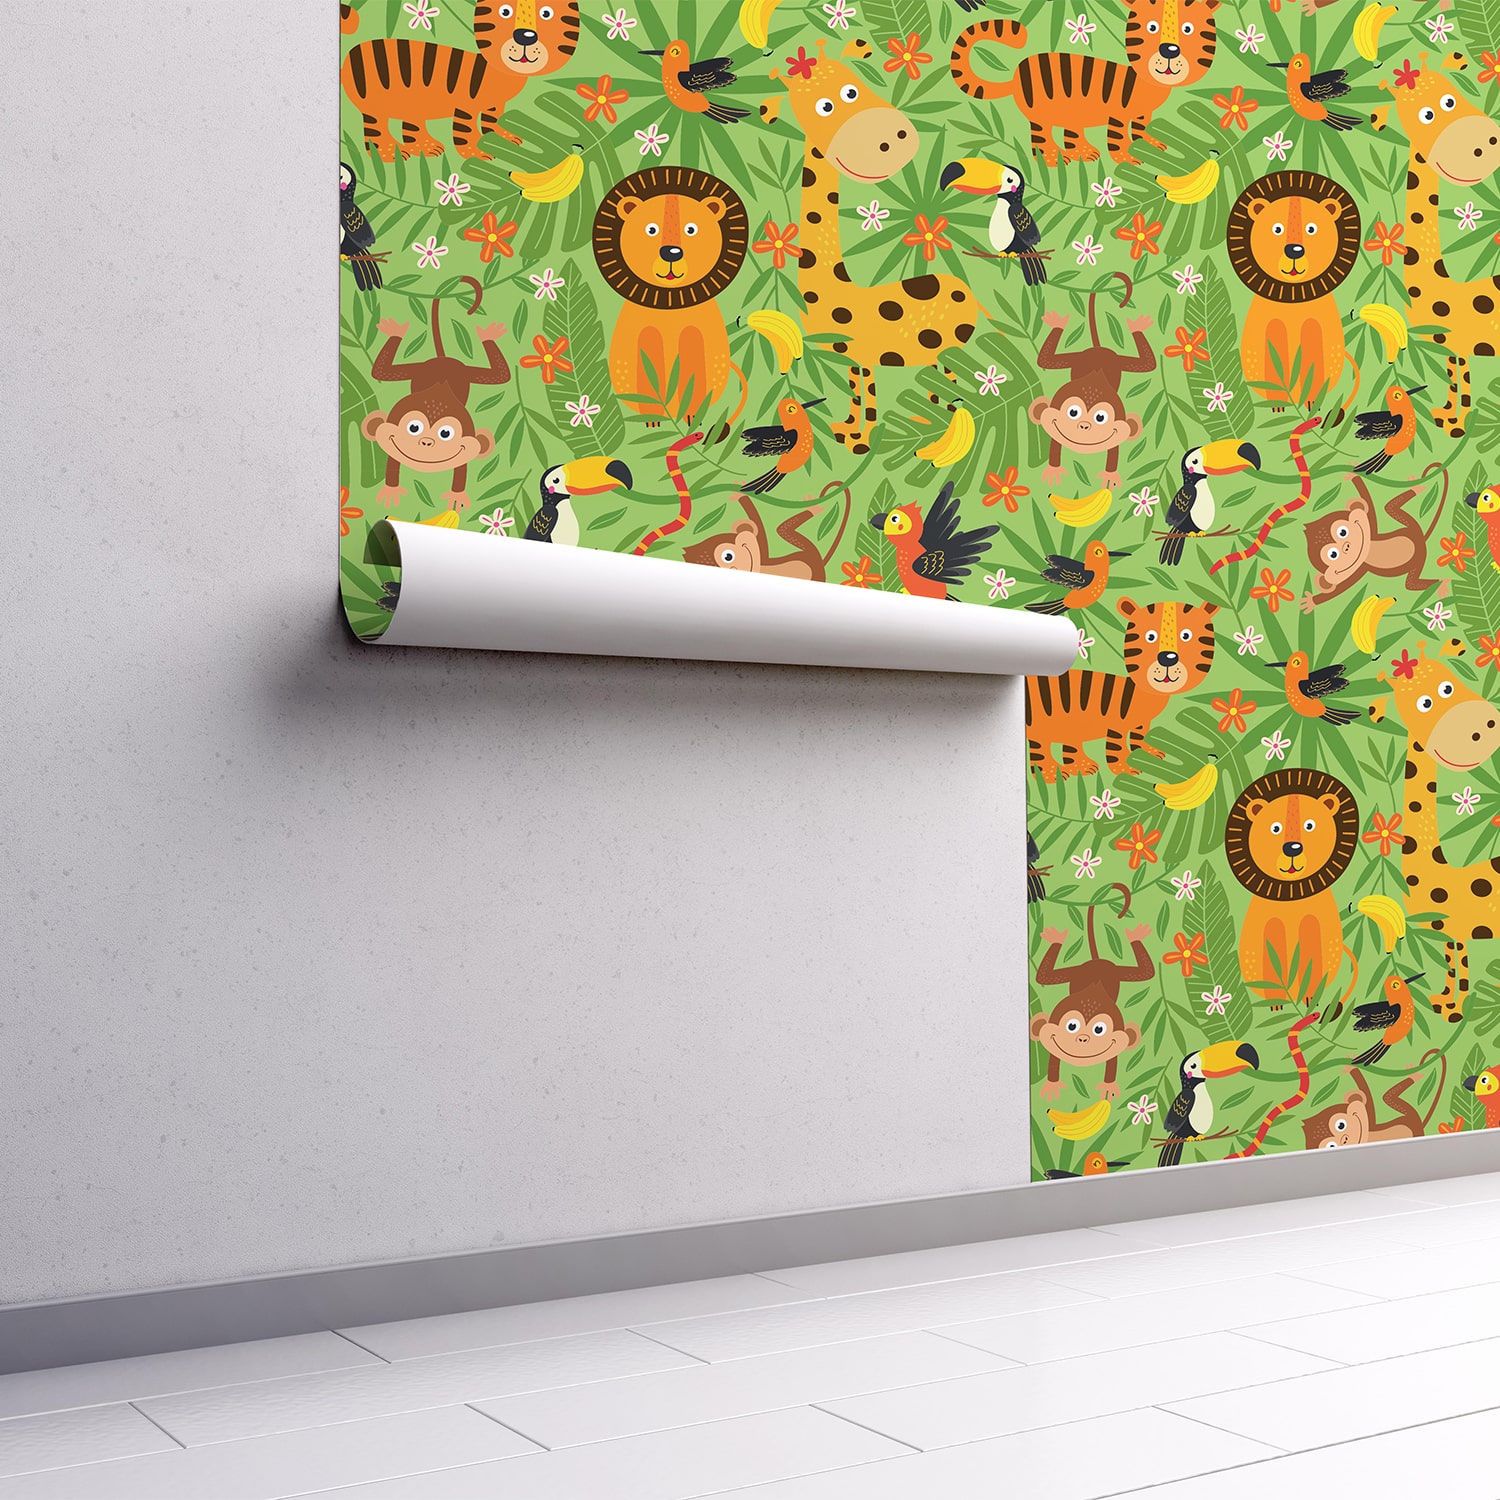 PP80-mur.rouleau-papier-peint-adhesif-decoratif-revetement-vinyle-motifs-animaux-de-la-jungle-2-renovation-meuble-mur-min